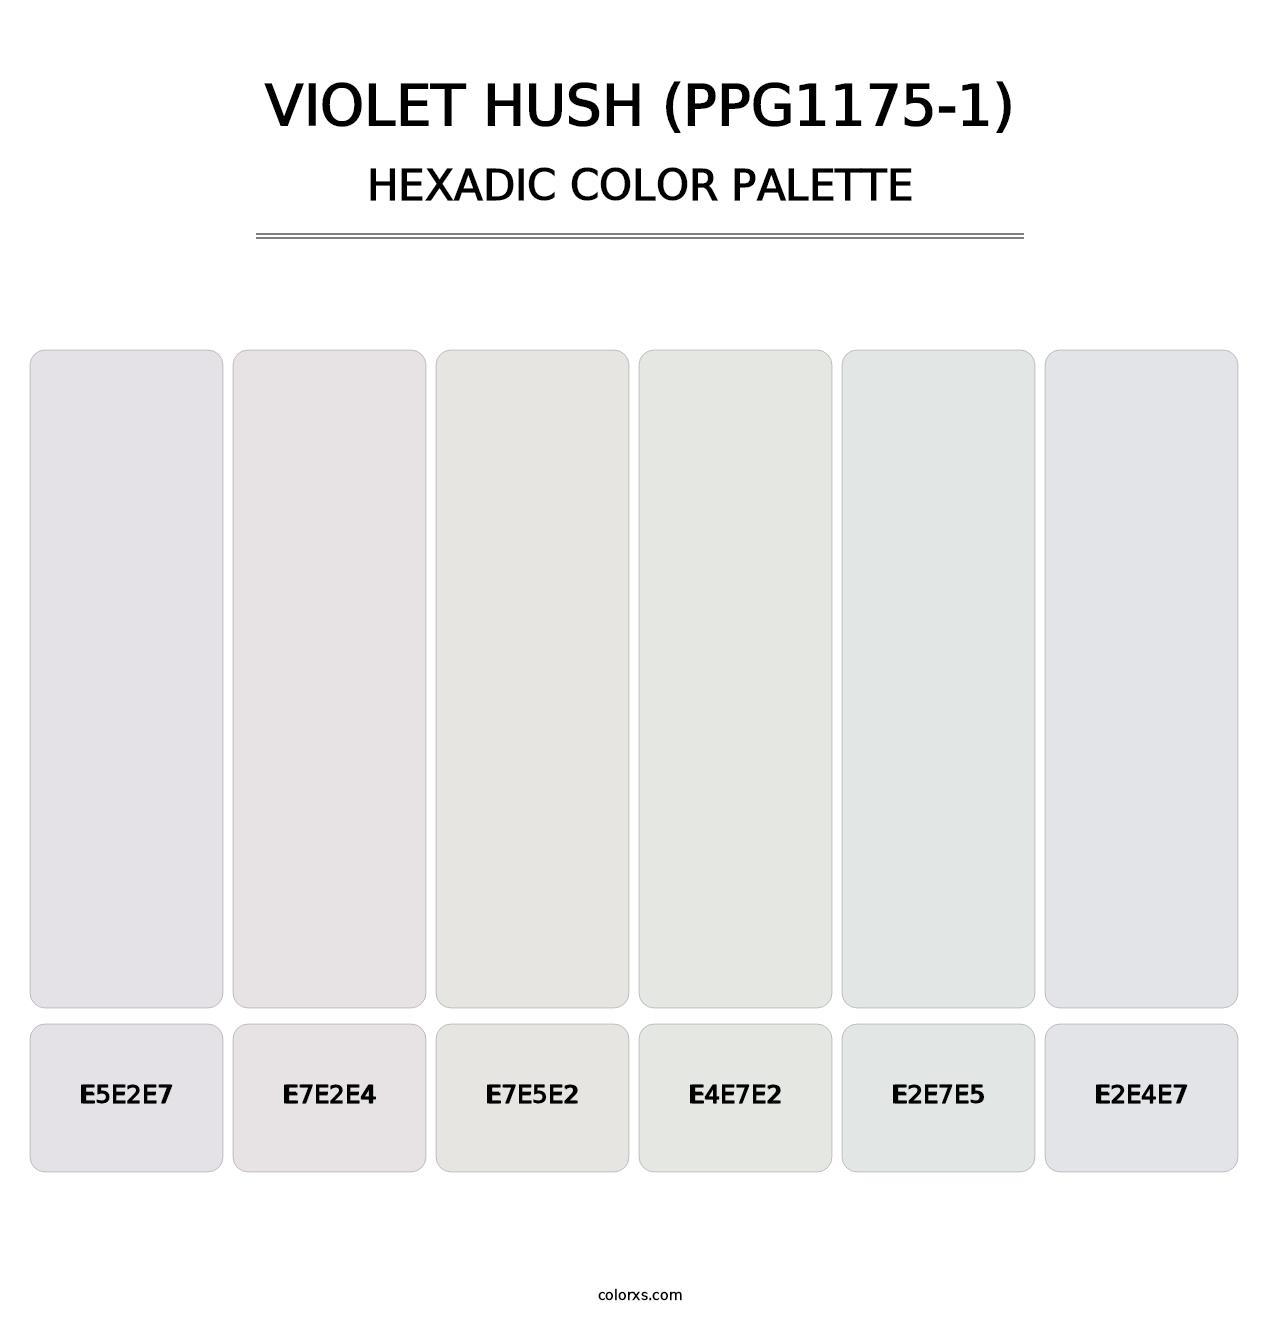 Violet Hush (PPG1175-1) - Hexadic Color Palette